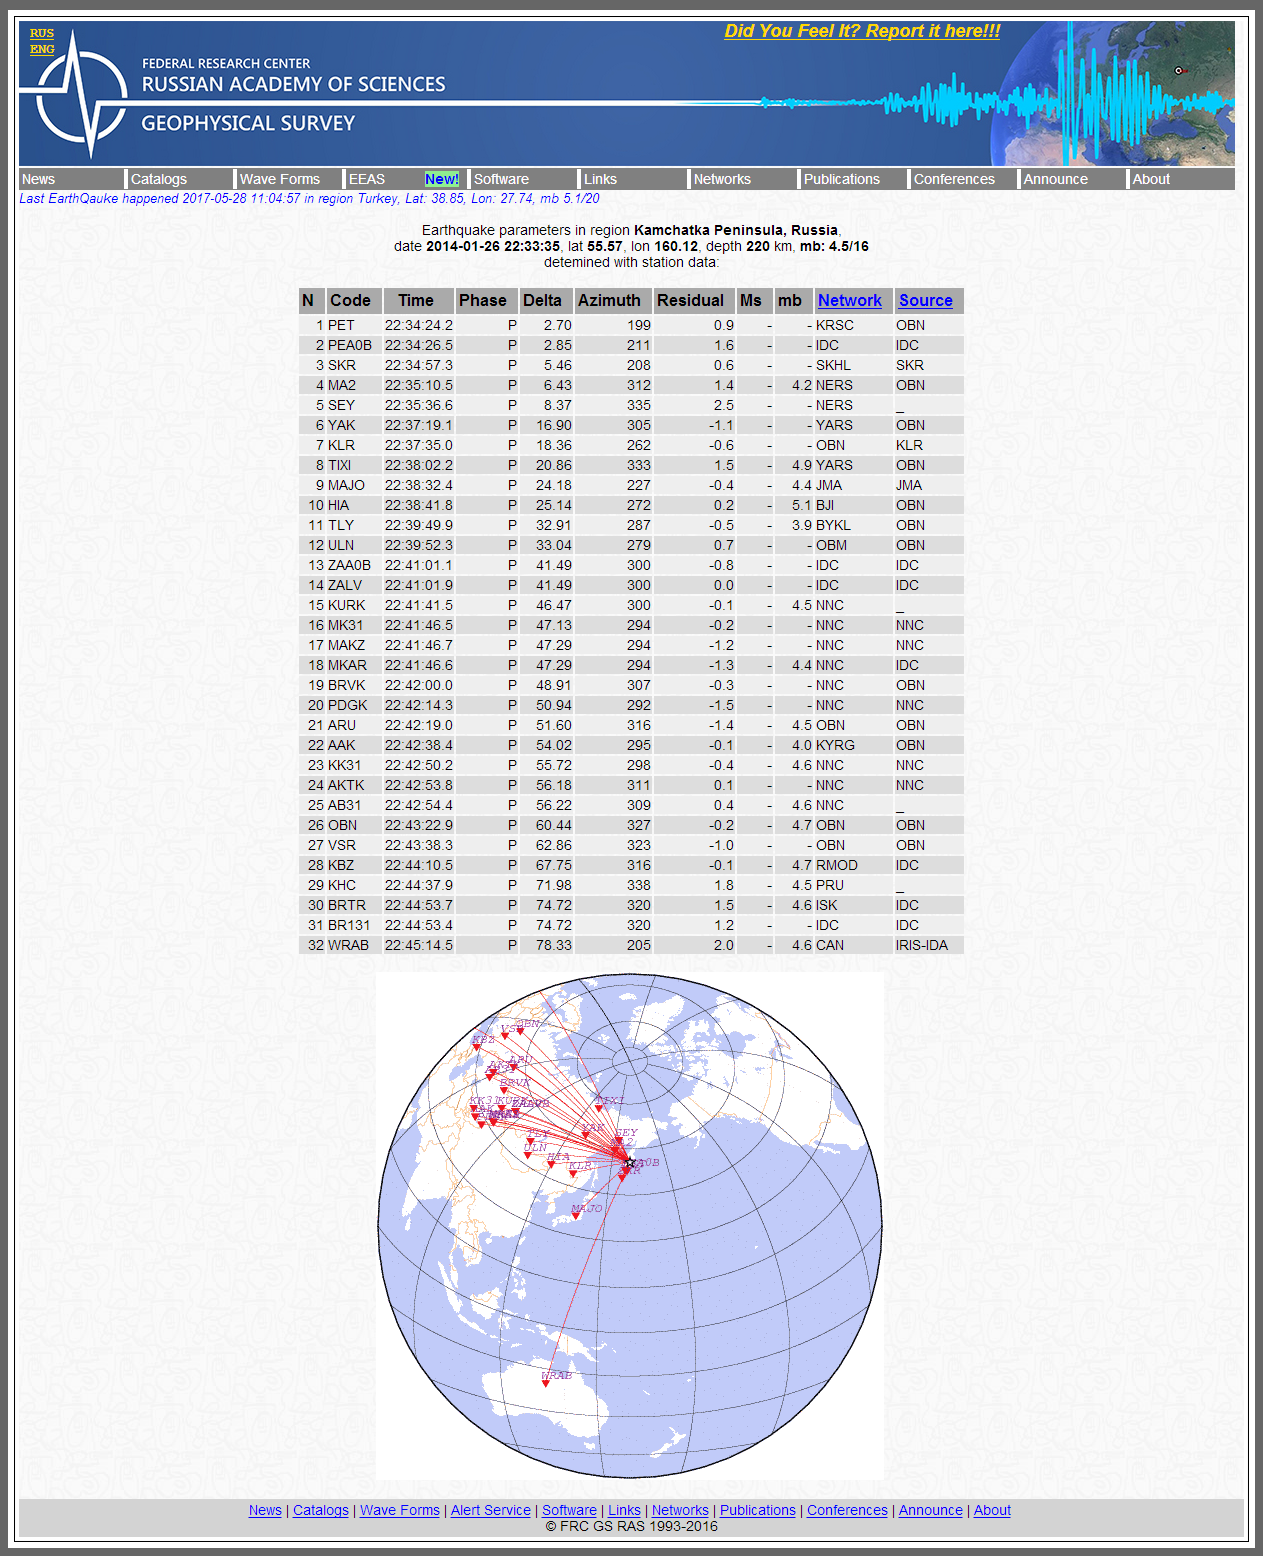 Alert Survey - Earthquake parameters in region Kam.png